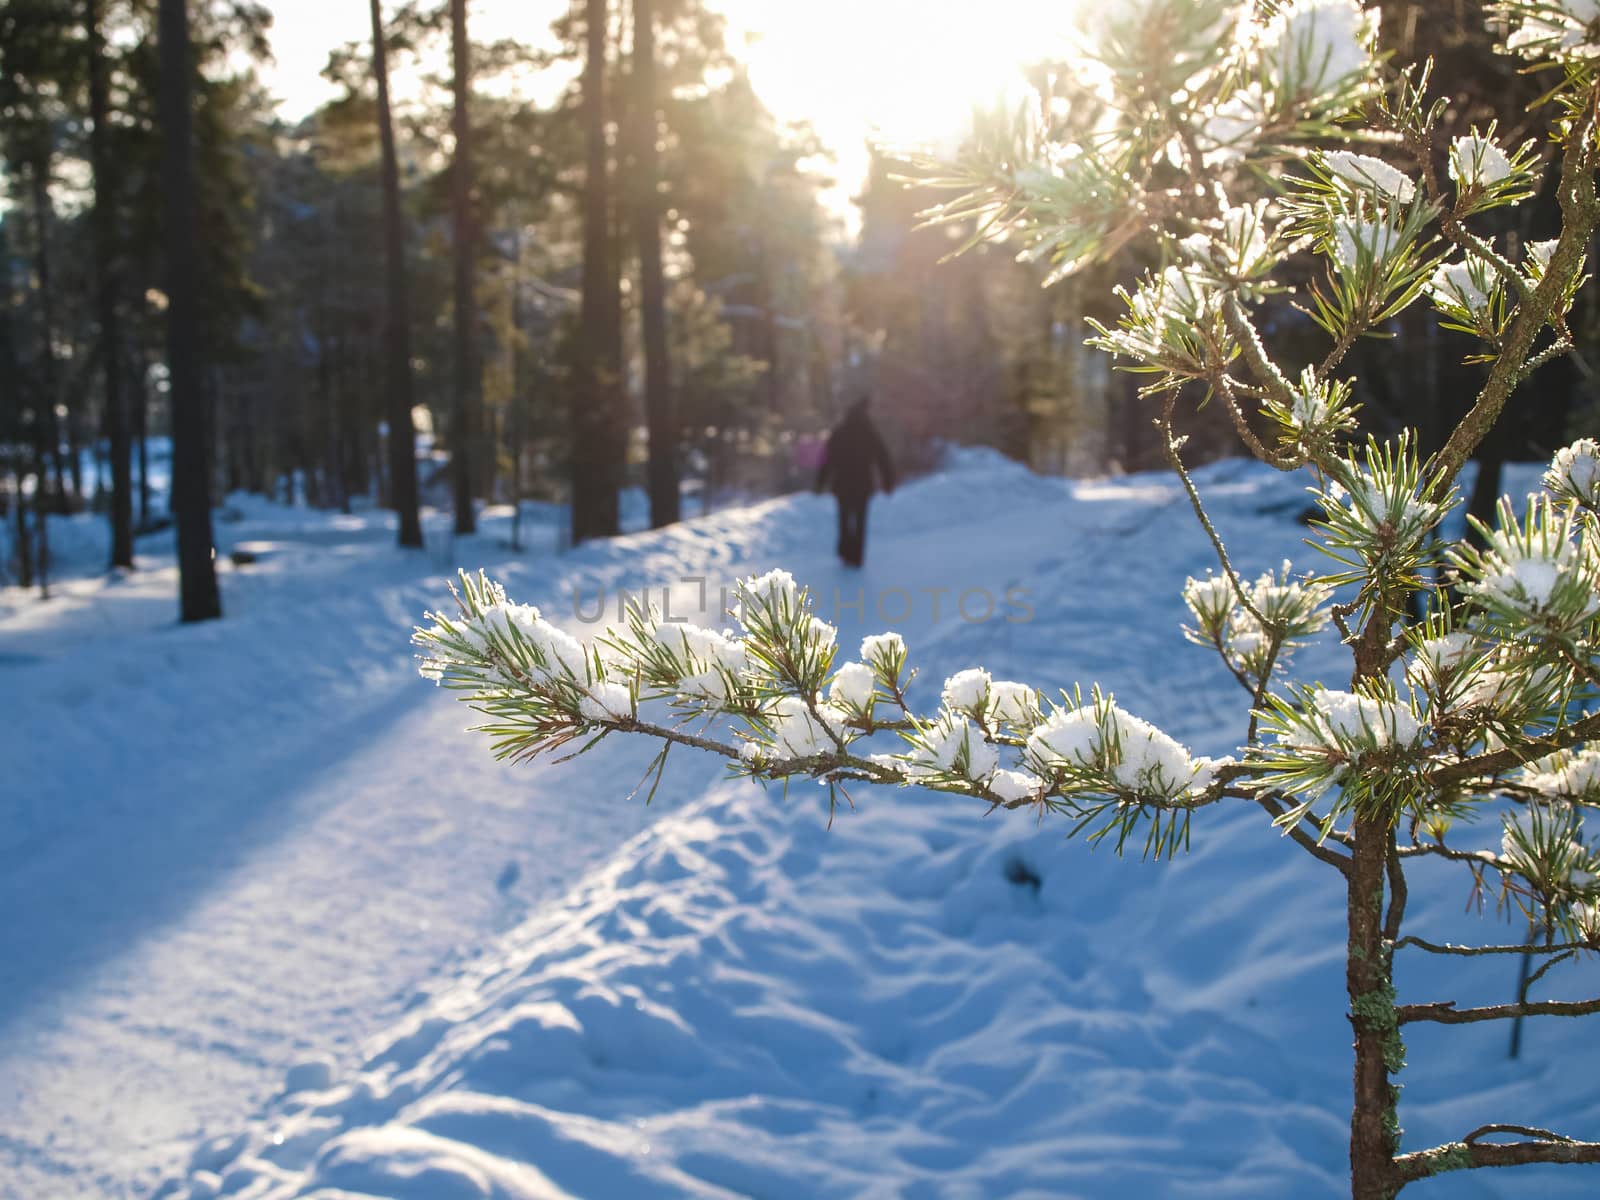 Snow in spruce tree by Arvebettum